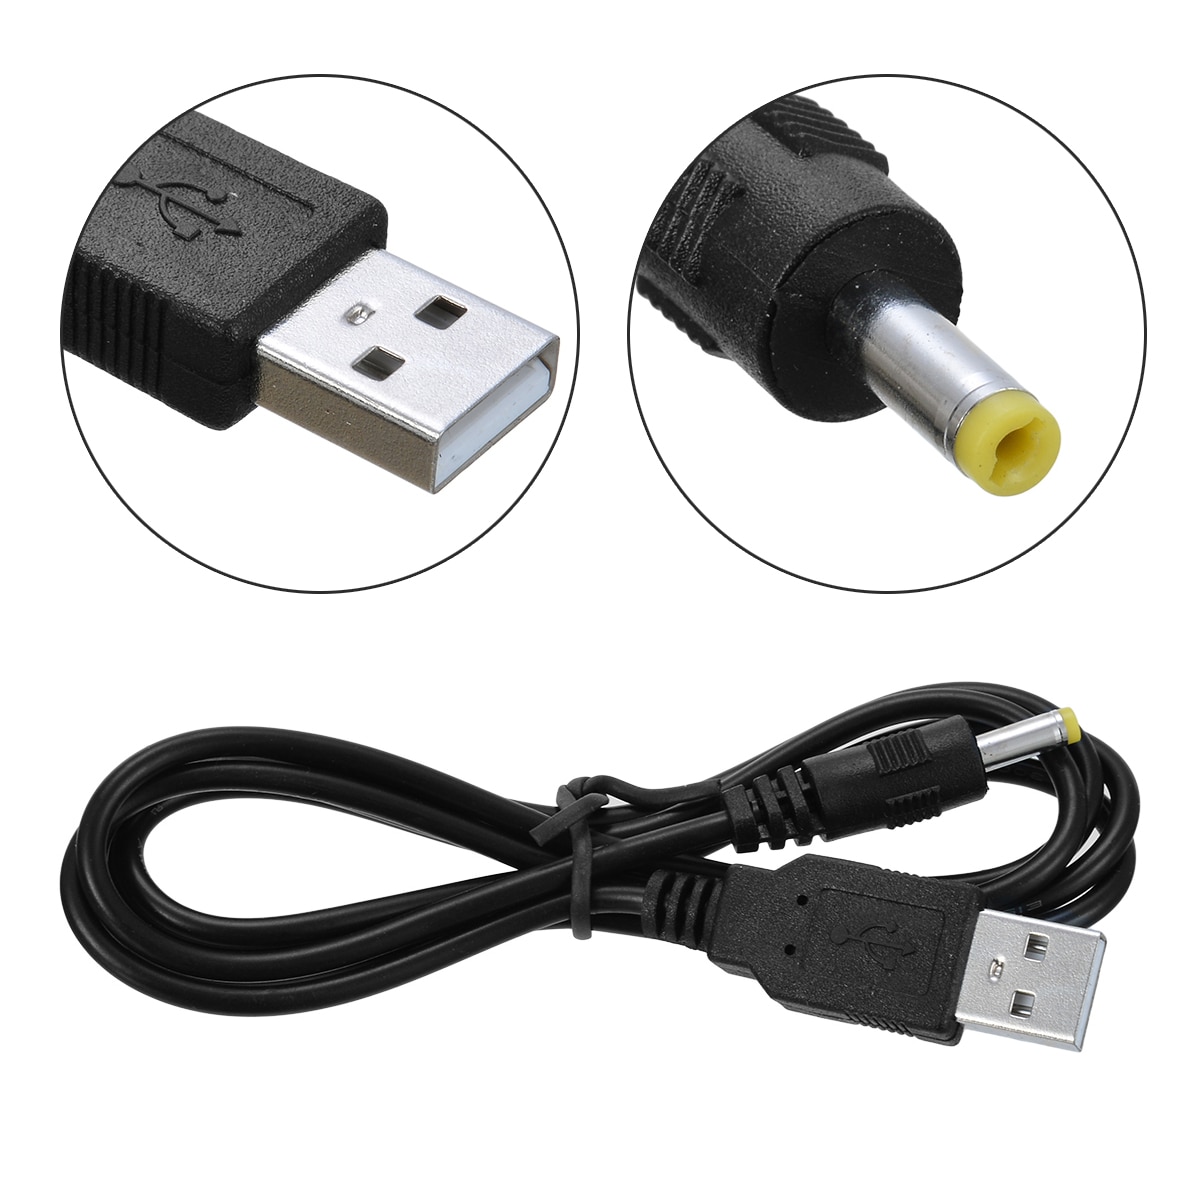 1 pc USB naar 4.0x1.7mm Kabel Kabel USB Male naar Male Power Charge Kabel Geschikt Voor Sony PSP